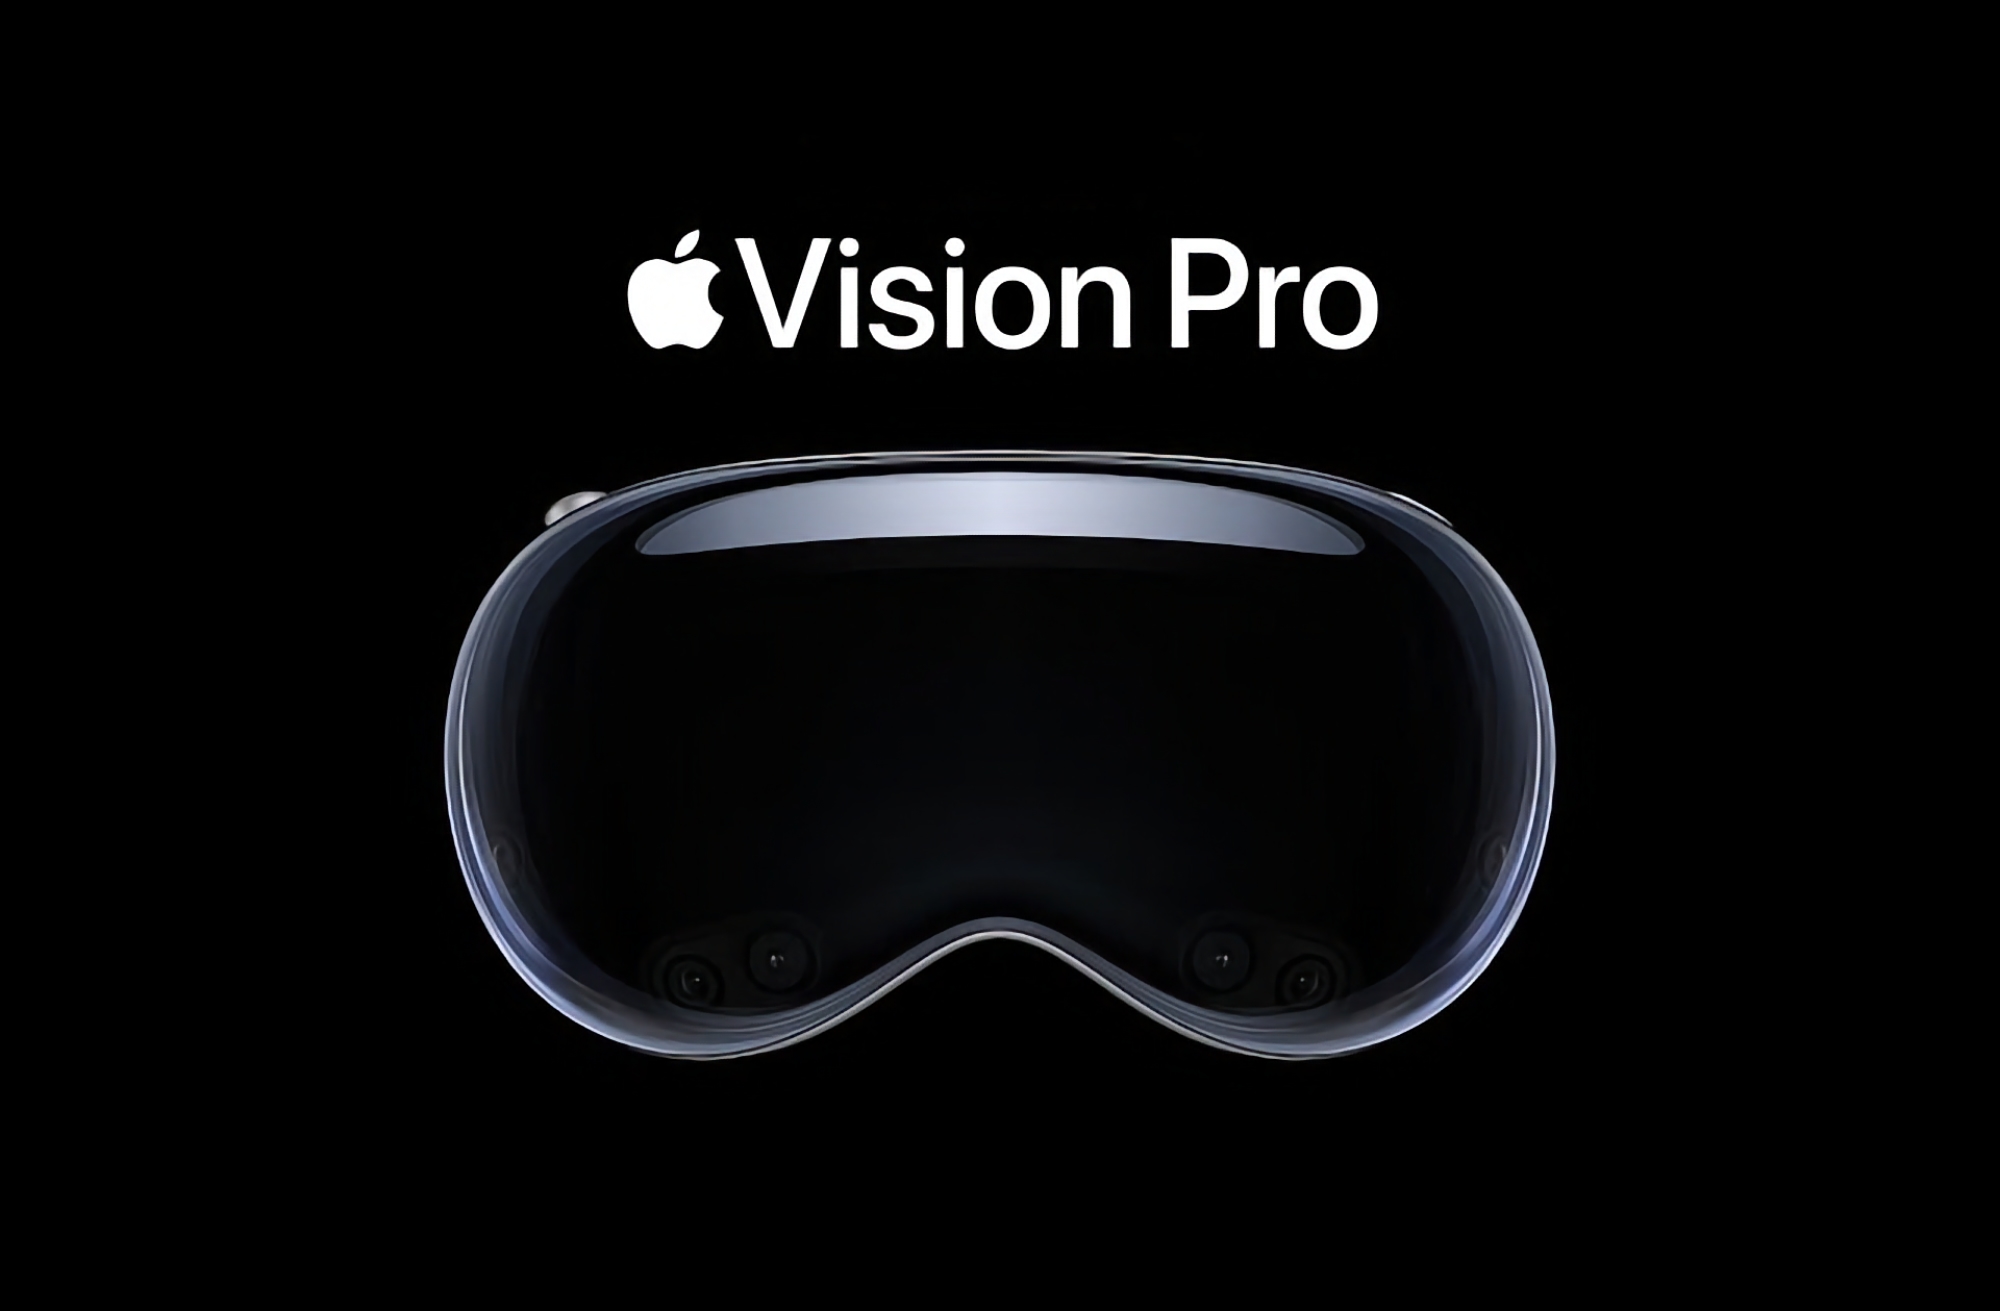 Rumores: Apple lanzará los auriculares Vision Pro el 26 o 27 de enero